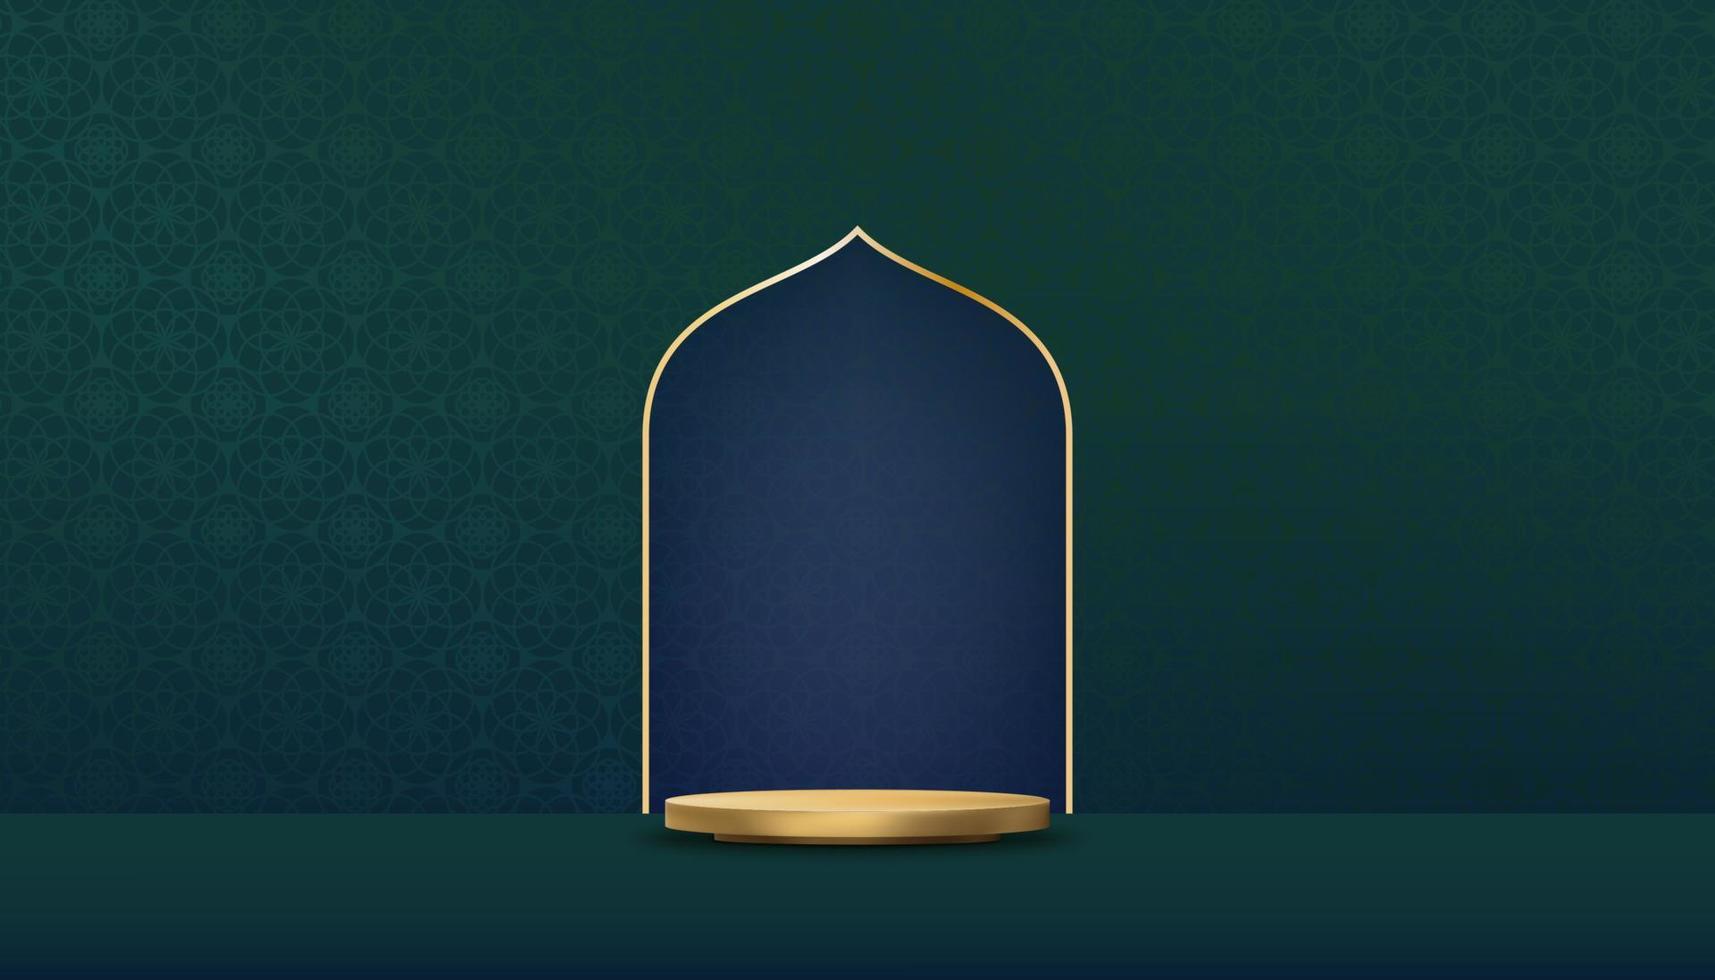 bakgrund mån islamisk art déco med 3d podium, fönster guld ram dekoration islam bakgrund prydnadsmall, vektor arabiska mönster geometrisk form, textur arabisk traditionellt motiv för julkort